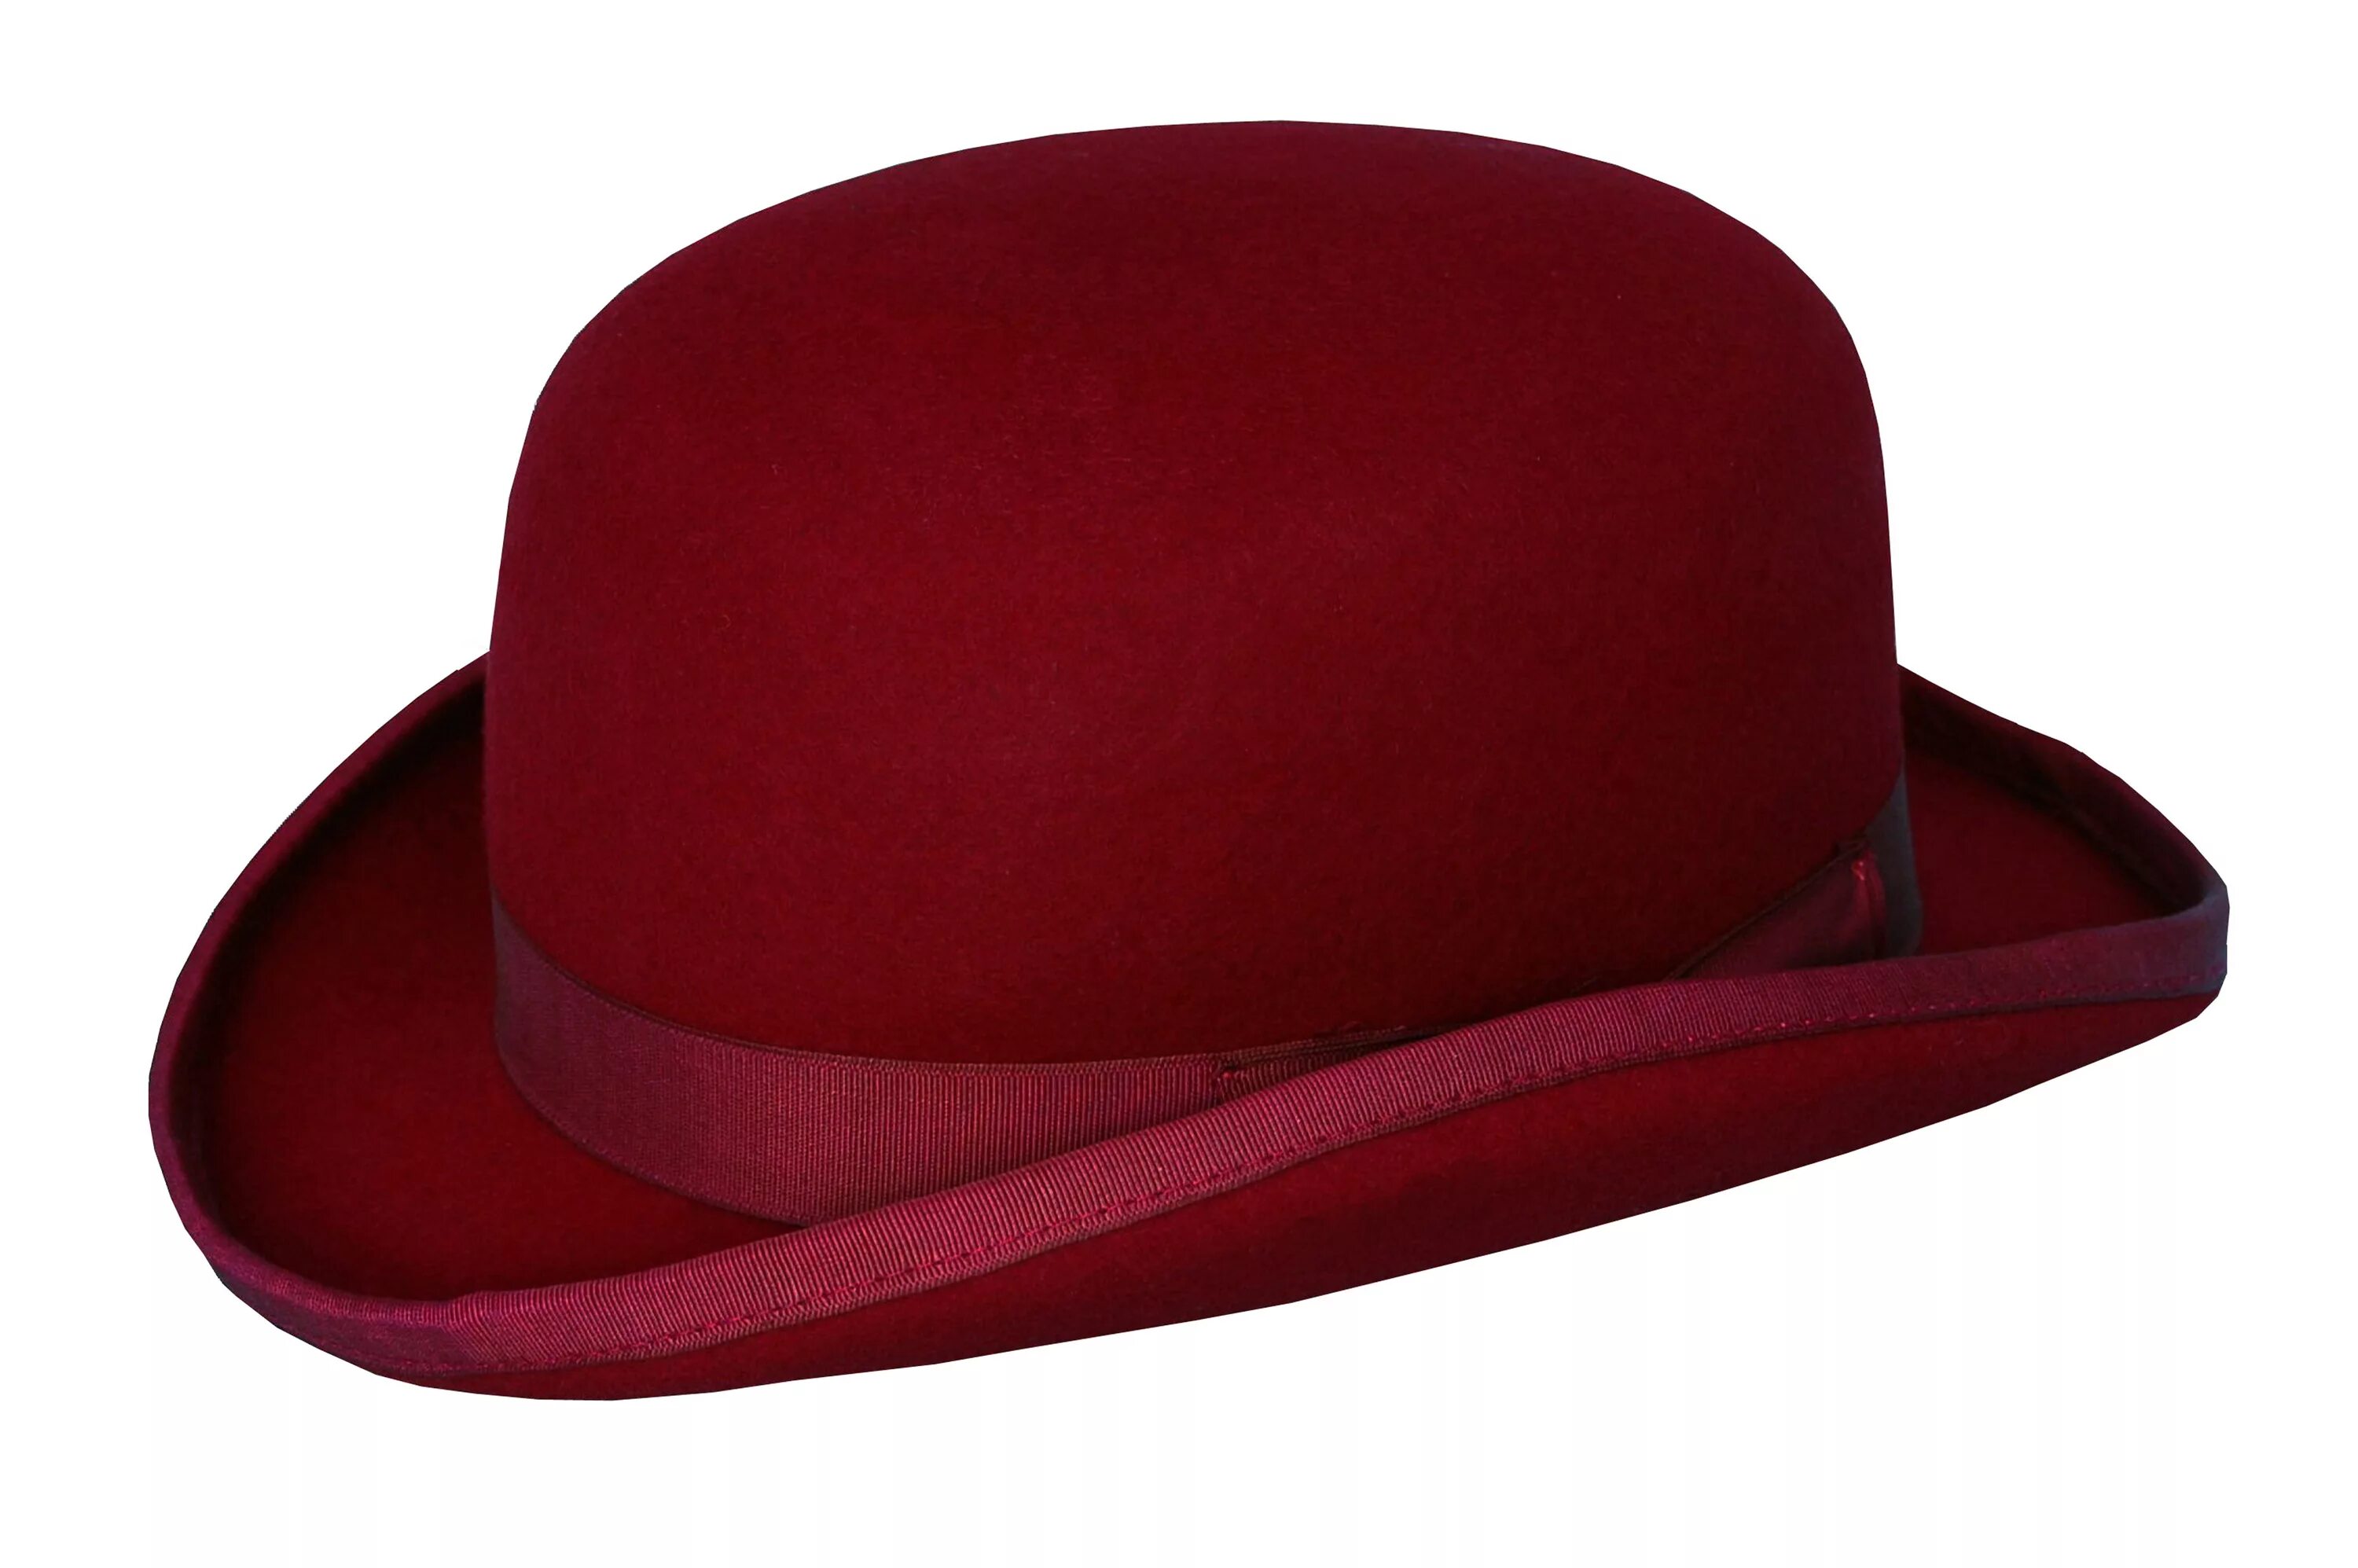 Long hats. Шляпы Tilley. Шляпа Red hat. Цилиндр (головной убор). Красная шляпа Боно.